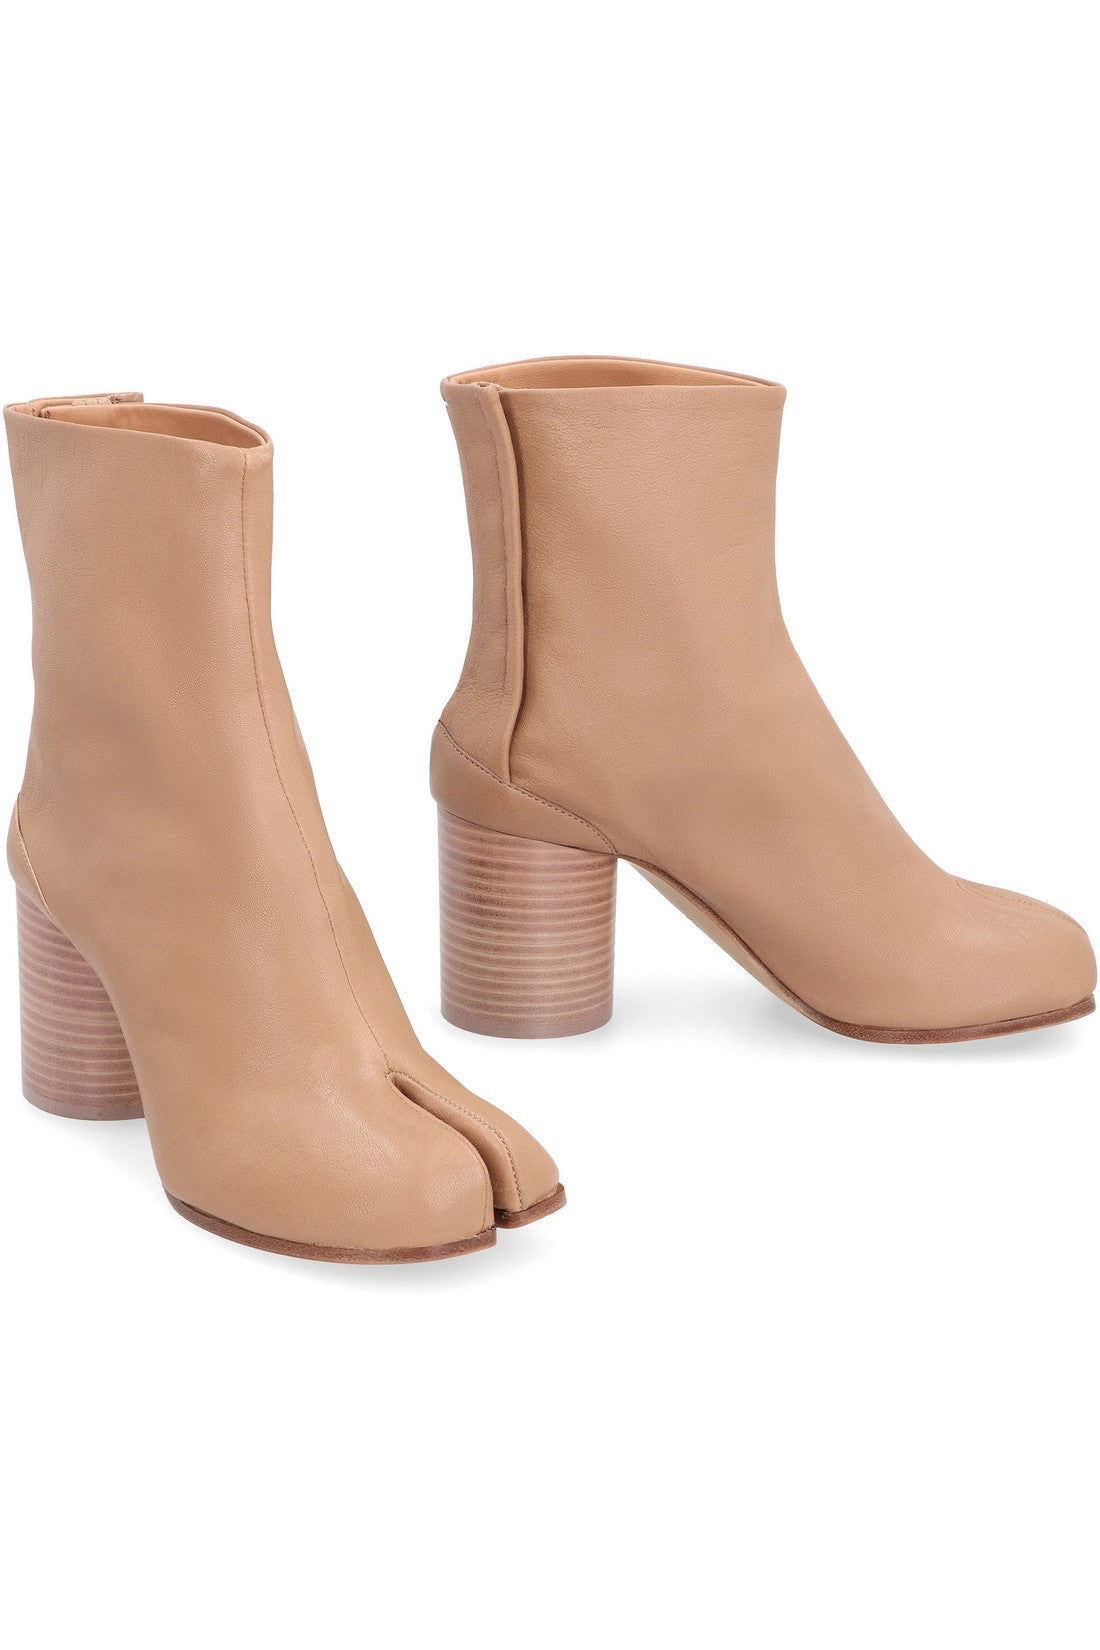 Maison Margiela-OUTLET-SALE-Tabi leather ankle boots-ARCHIVIST